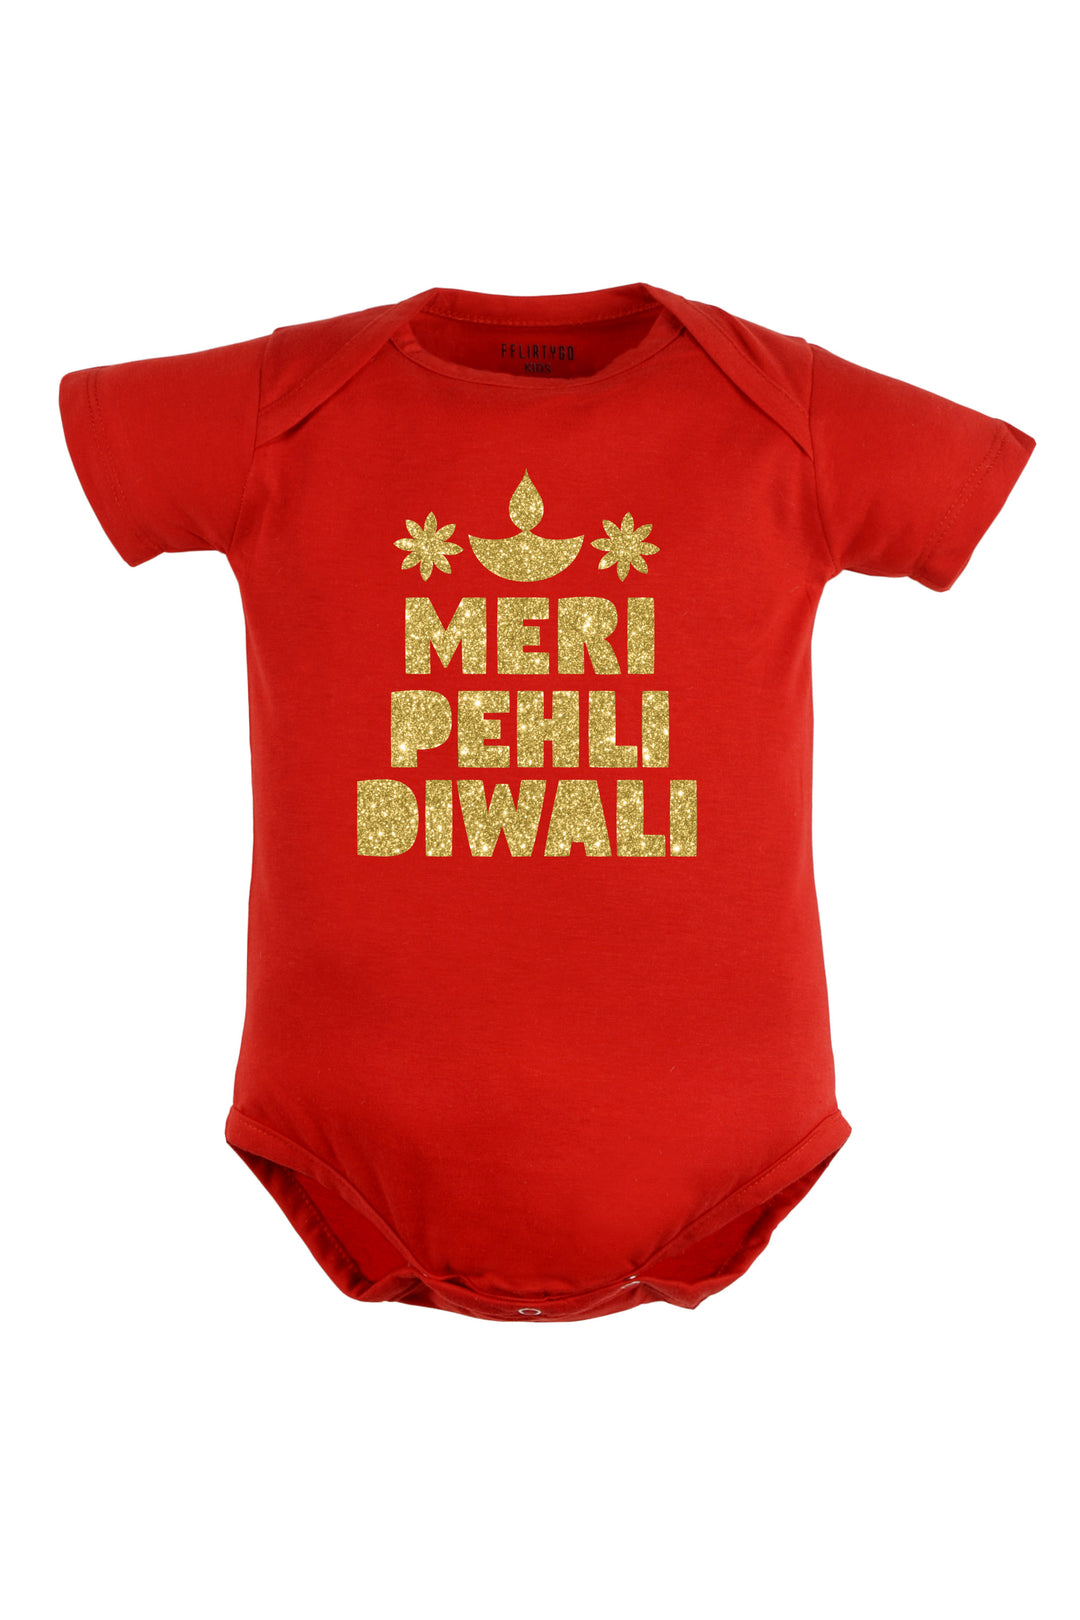 Meri Pehli Diwali With Glitter Baby Romper | Onesies